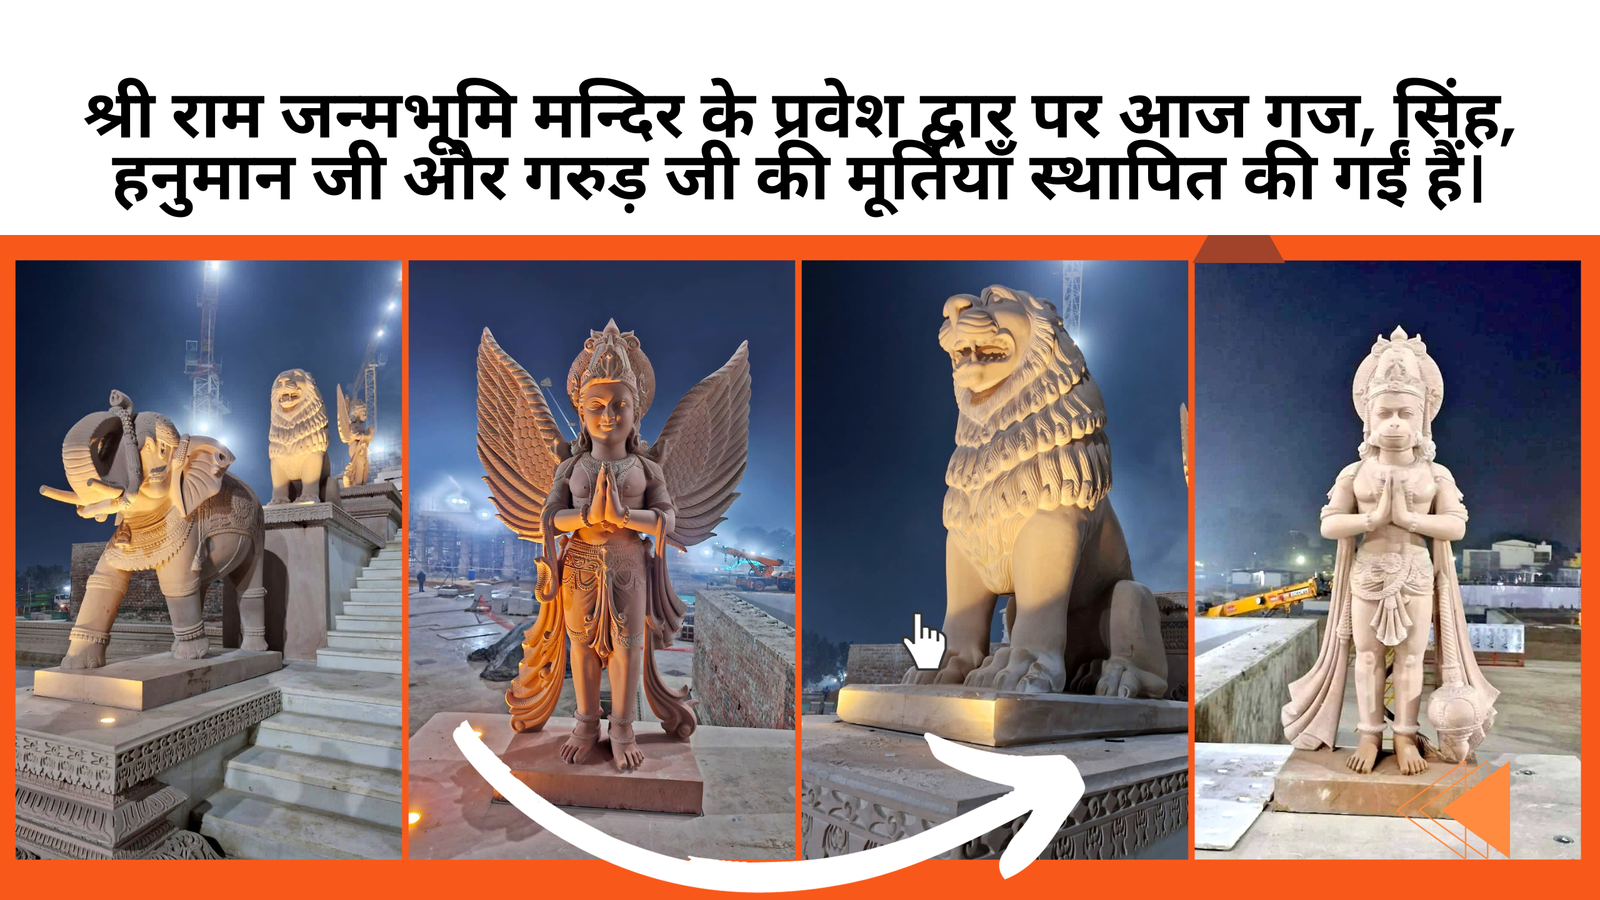 श्री राम जन्मभूमि मन्दिर के प्रवेश द्वार पर आज गज, सिंह, हनुमान जी और गरुड़ जी की मूर्तियाँ स्थापित की गईं हैं।